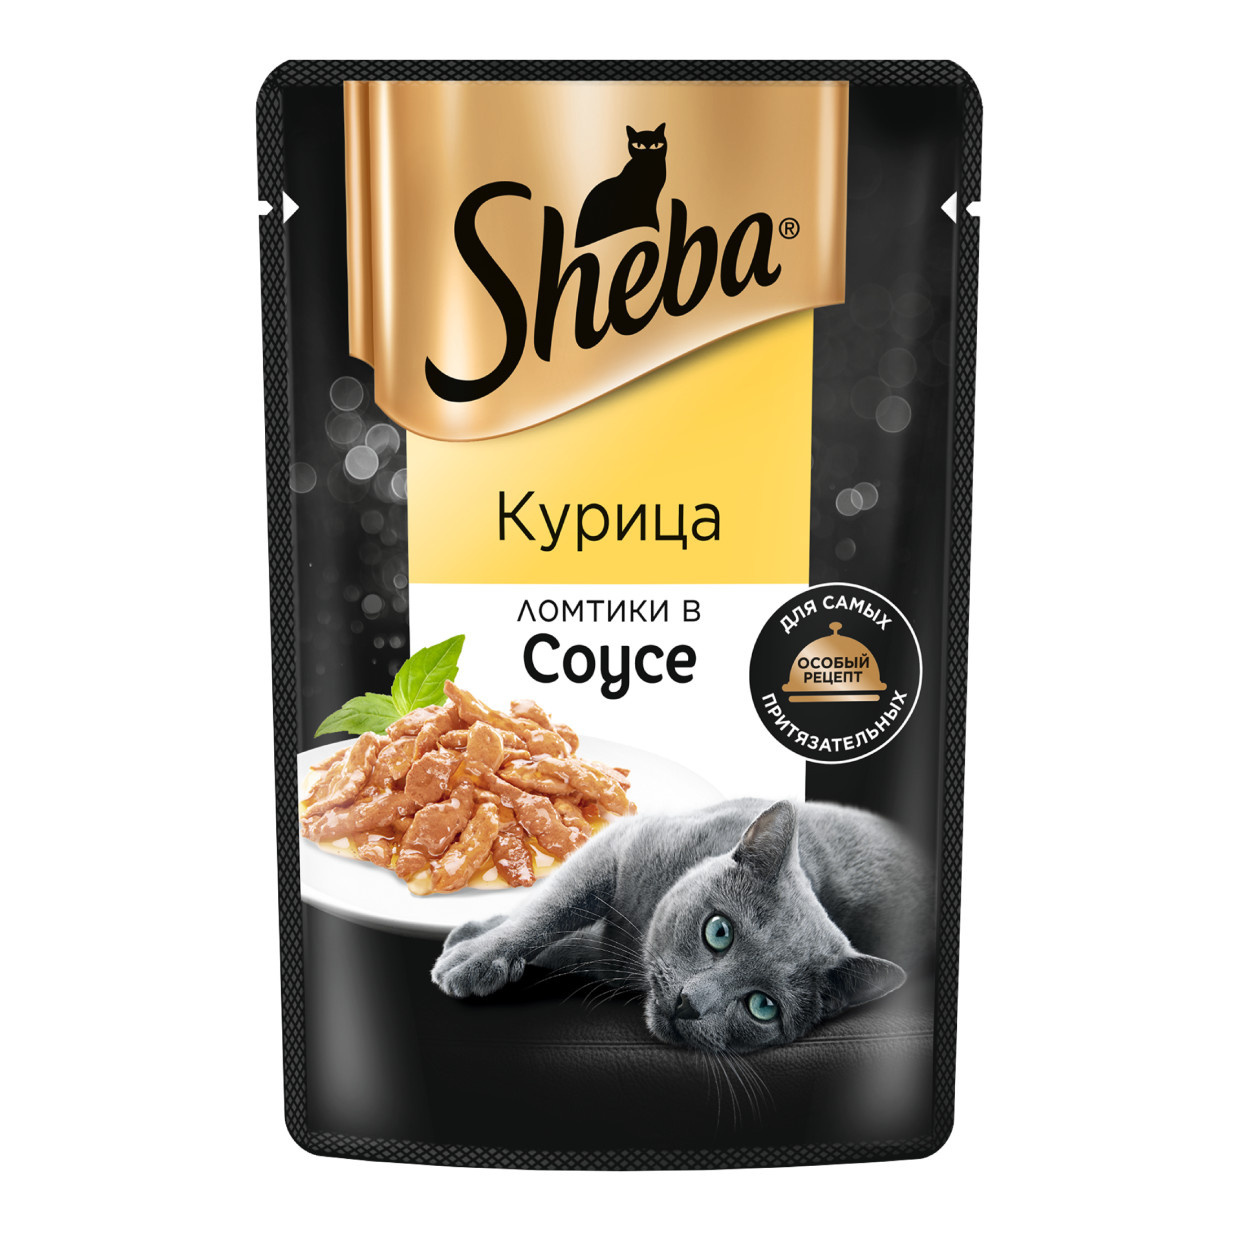 Sheba Sheba влажный корм для кошек «Ломтики в соусе с курицей» (75 г)